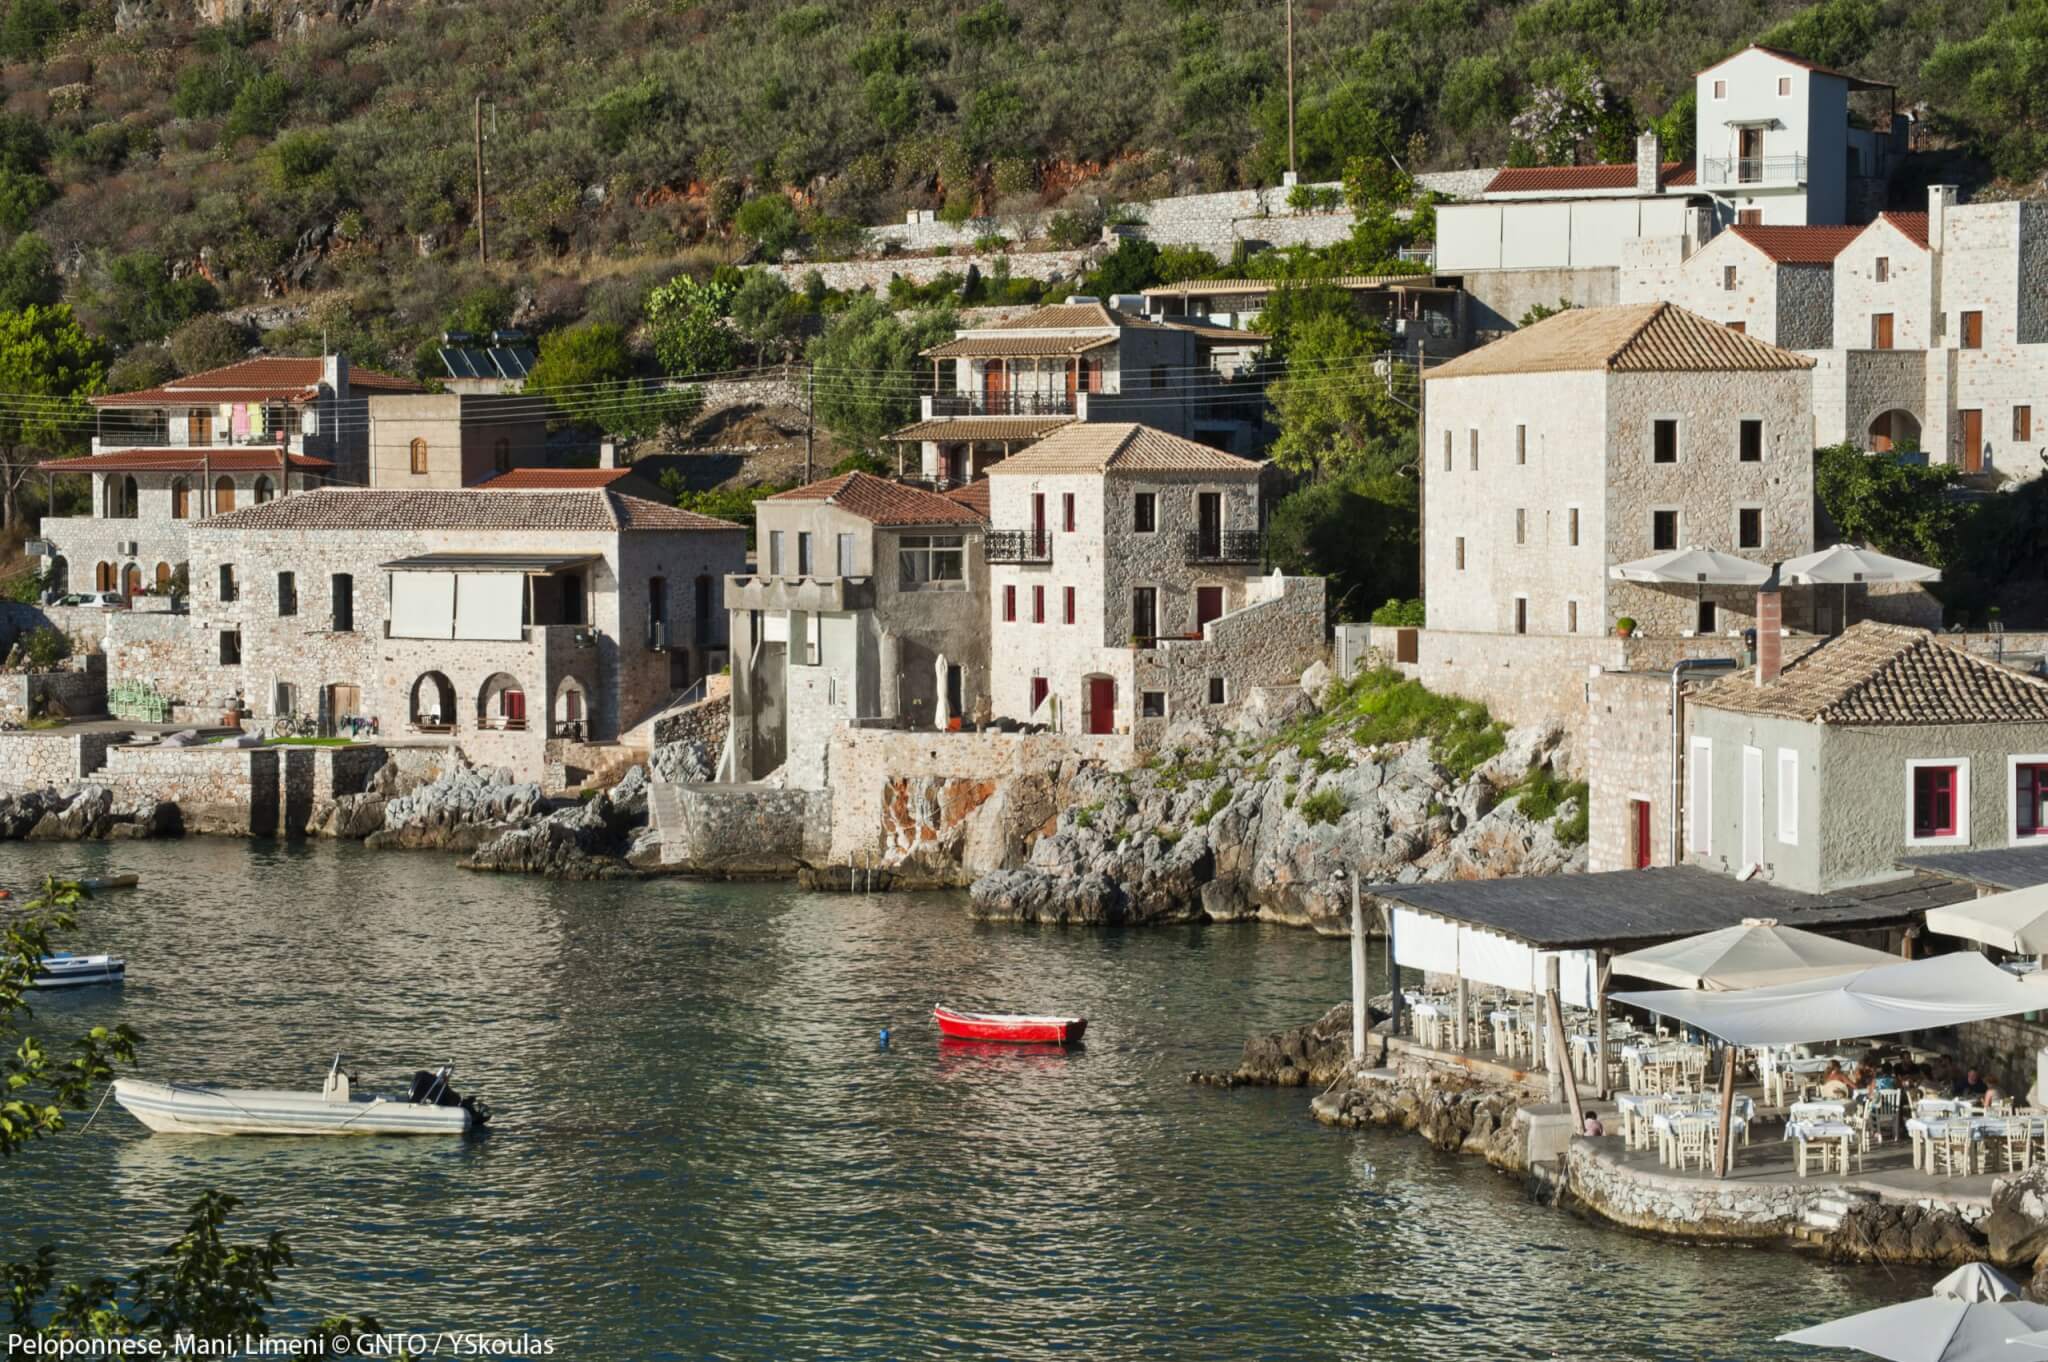 Vacanza in Peloponneso, la bellezza eterna di una terra per tutte le stagioni - Peloponnese Mani Limeni YSkoulas 2227 scaled - Gay.it